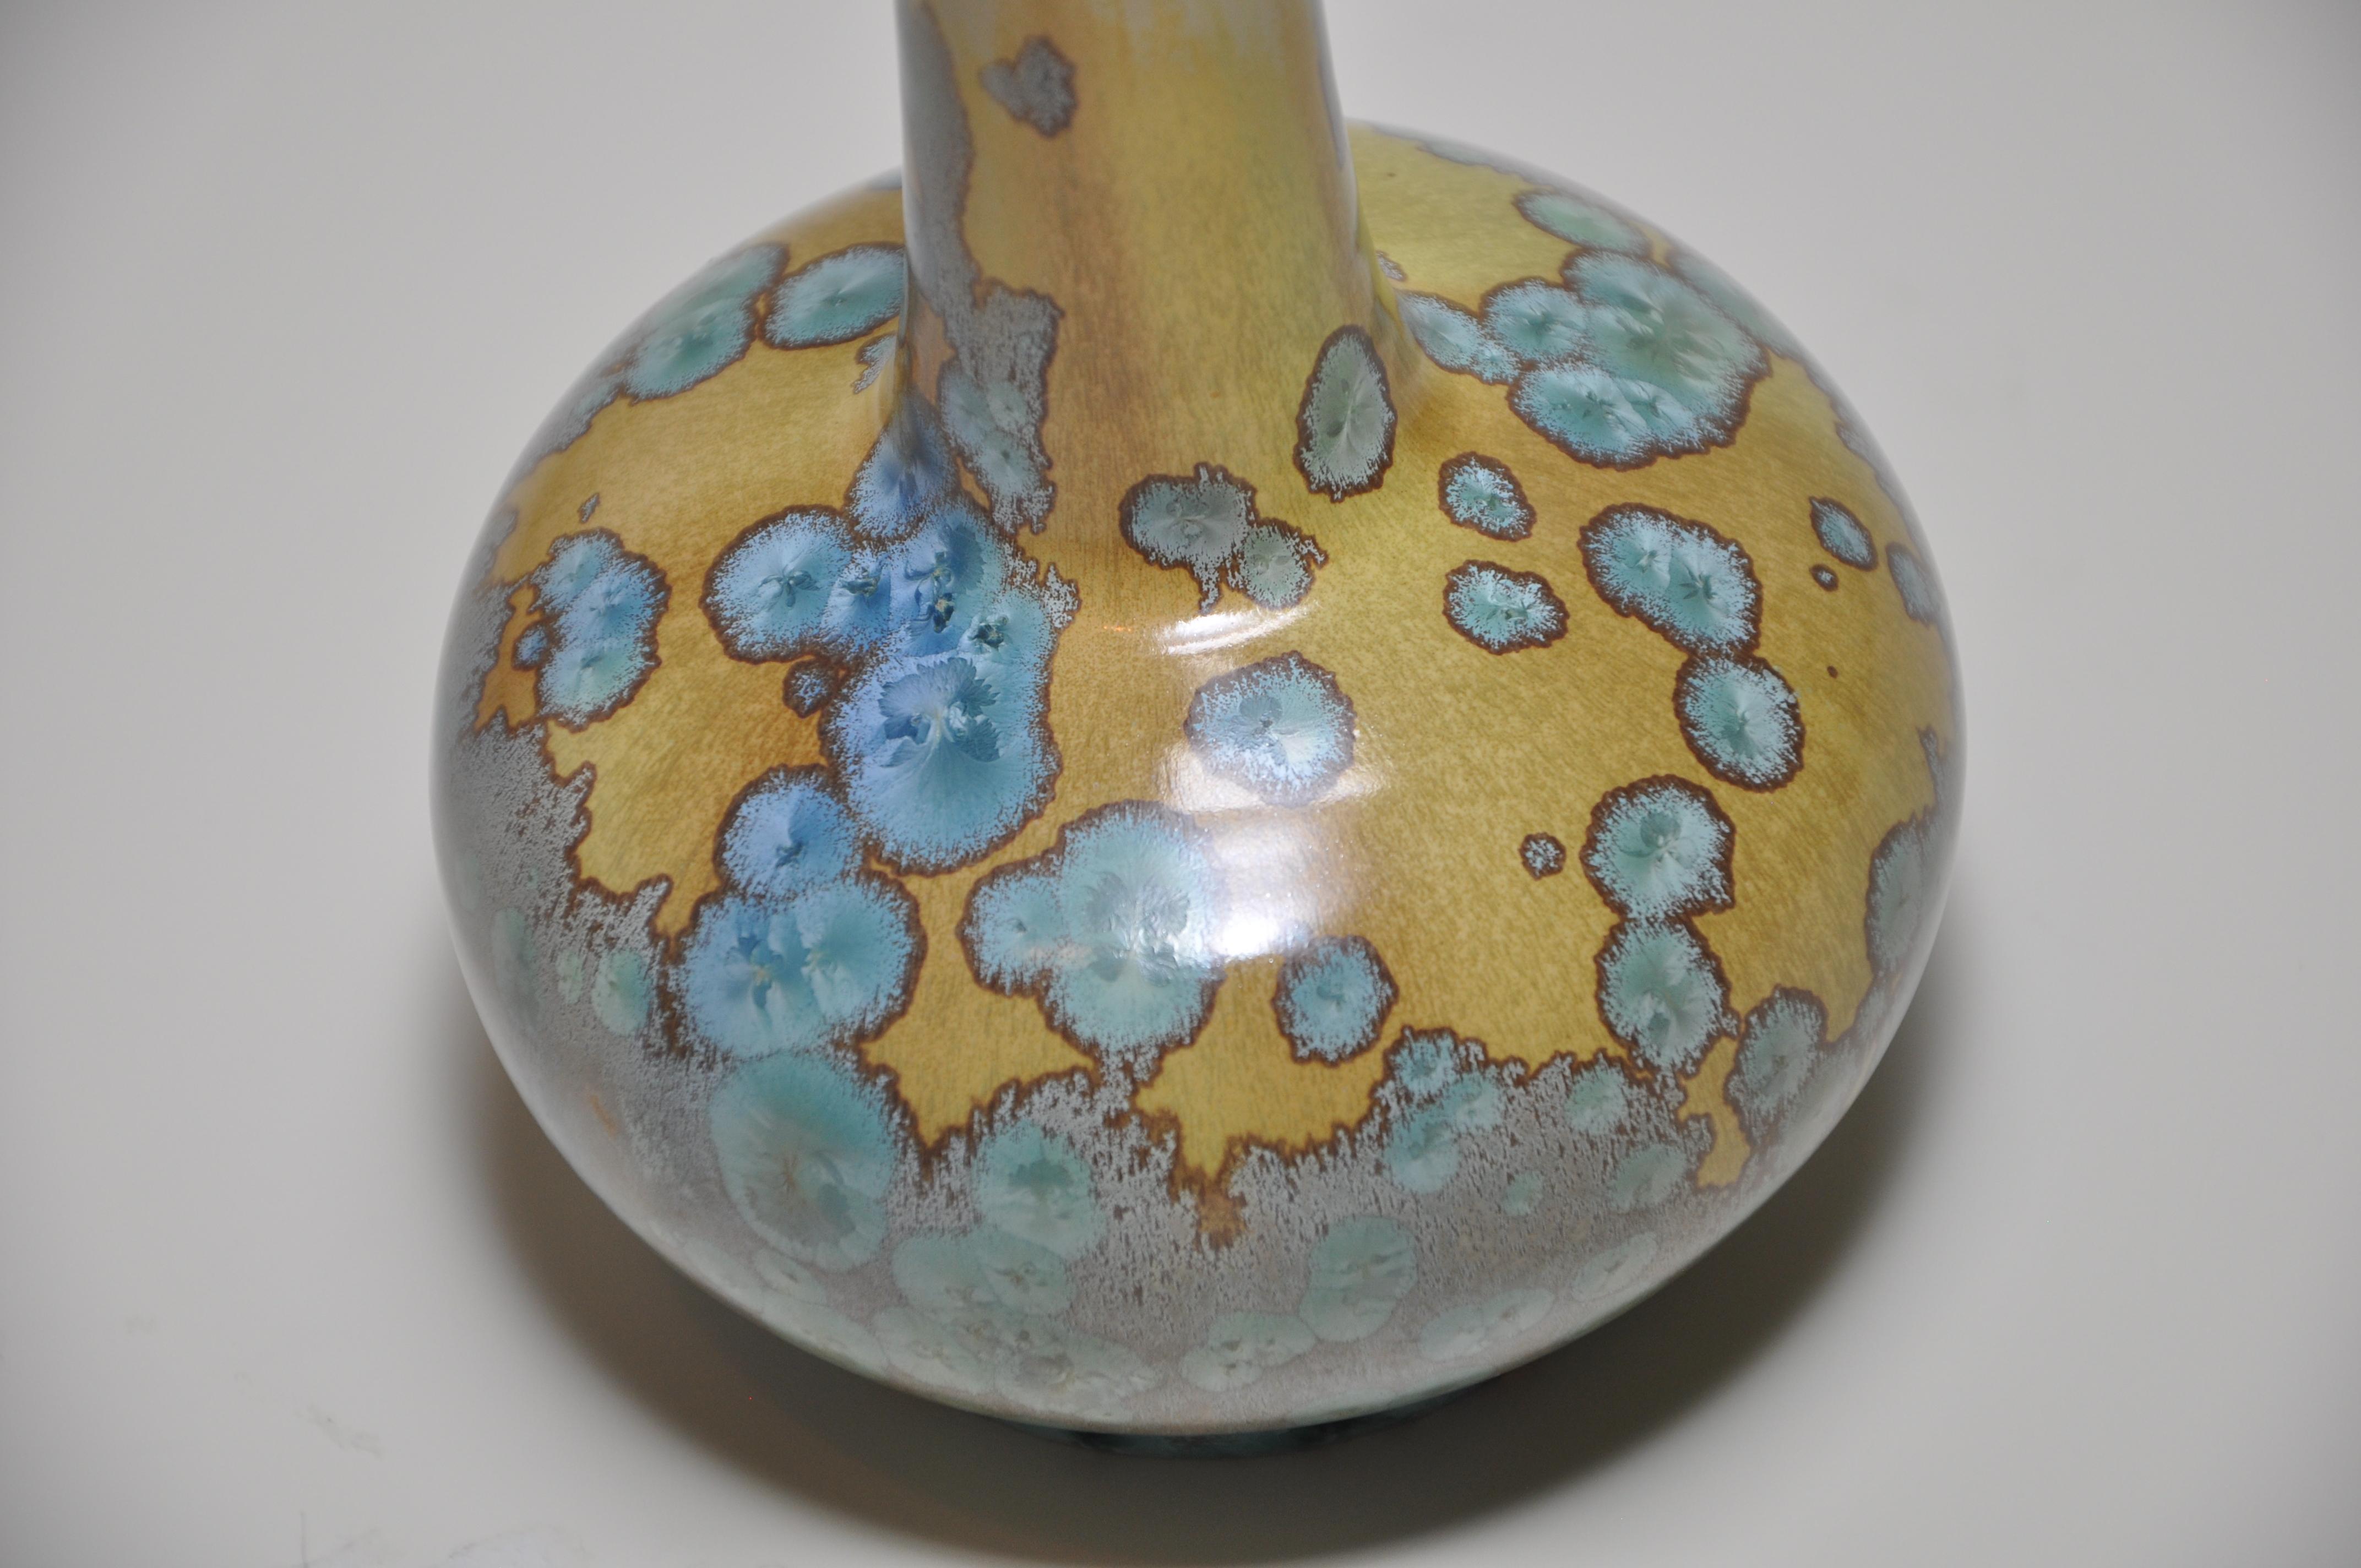 Rare vase en céramique Art Nouveau français de forme globulaire par Alfred Renoleau, 
avec une très jolie glaçure cristalline vert bleuté sur un corps ocre pâle au ton doux. 
Un exemple exquis de son travail, digne d'un musée.

  

Veuillez